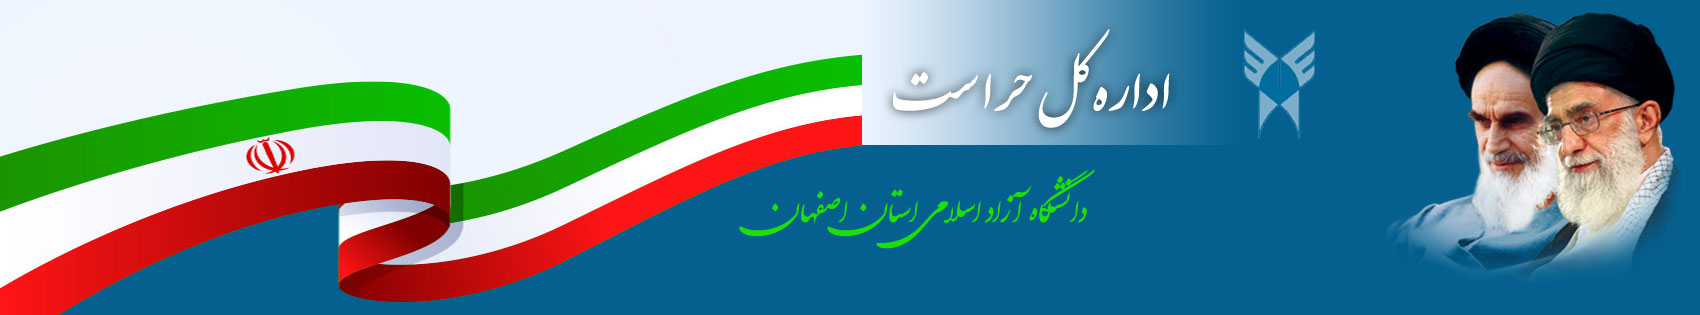 حراست دانشگاه آزاد اسلامی واحد اصفهان (خوراسگان)